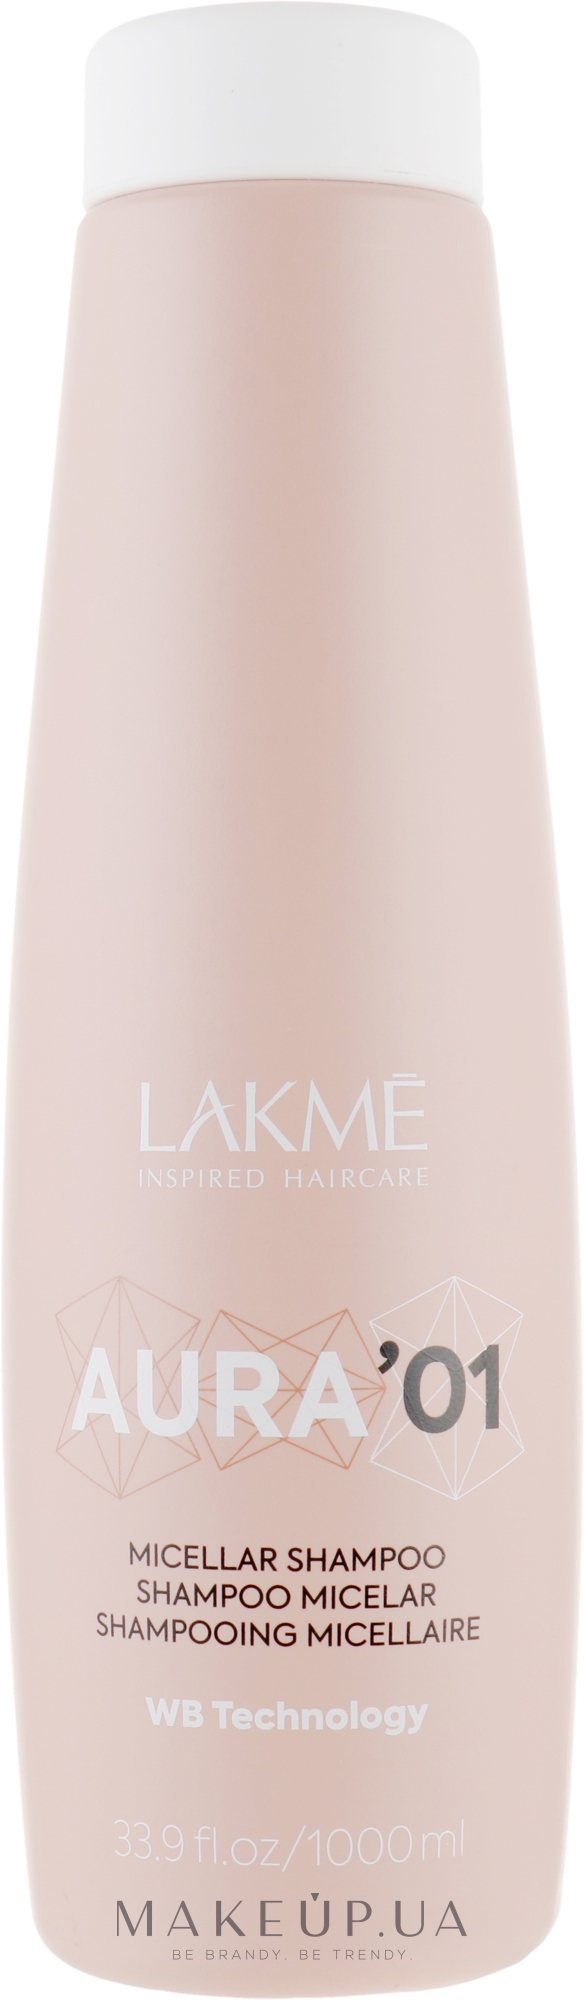 Міцелярний шампунь для волосся - Lakme Aura '01 Micellar Shampoo — фото 1000ml